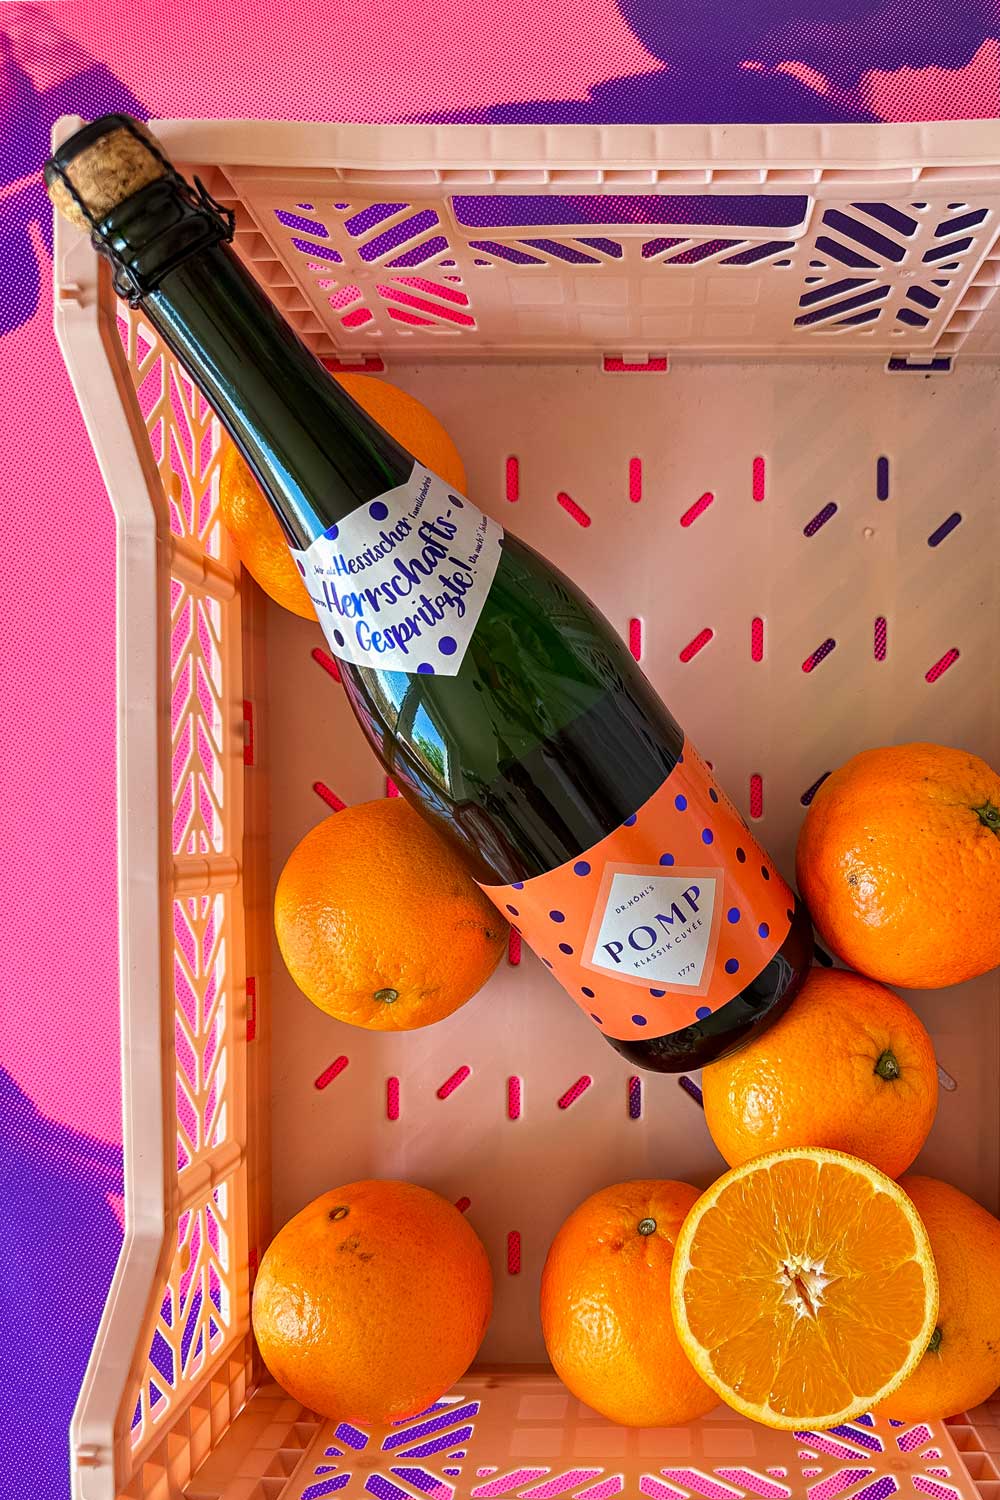 flasche pomp sekt mit orangenem etikett in einer rosa kunststoff-kiste mit einigen orangen